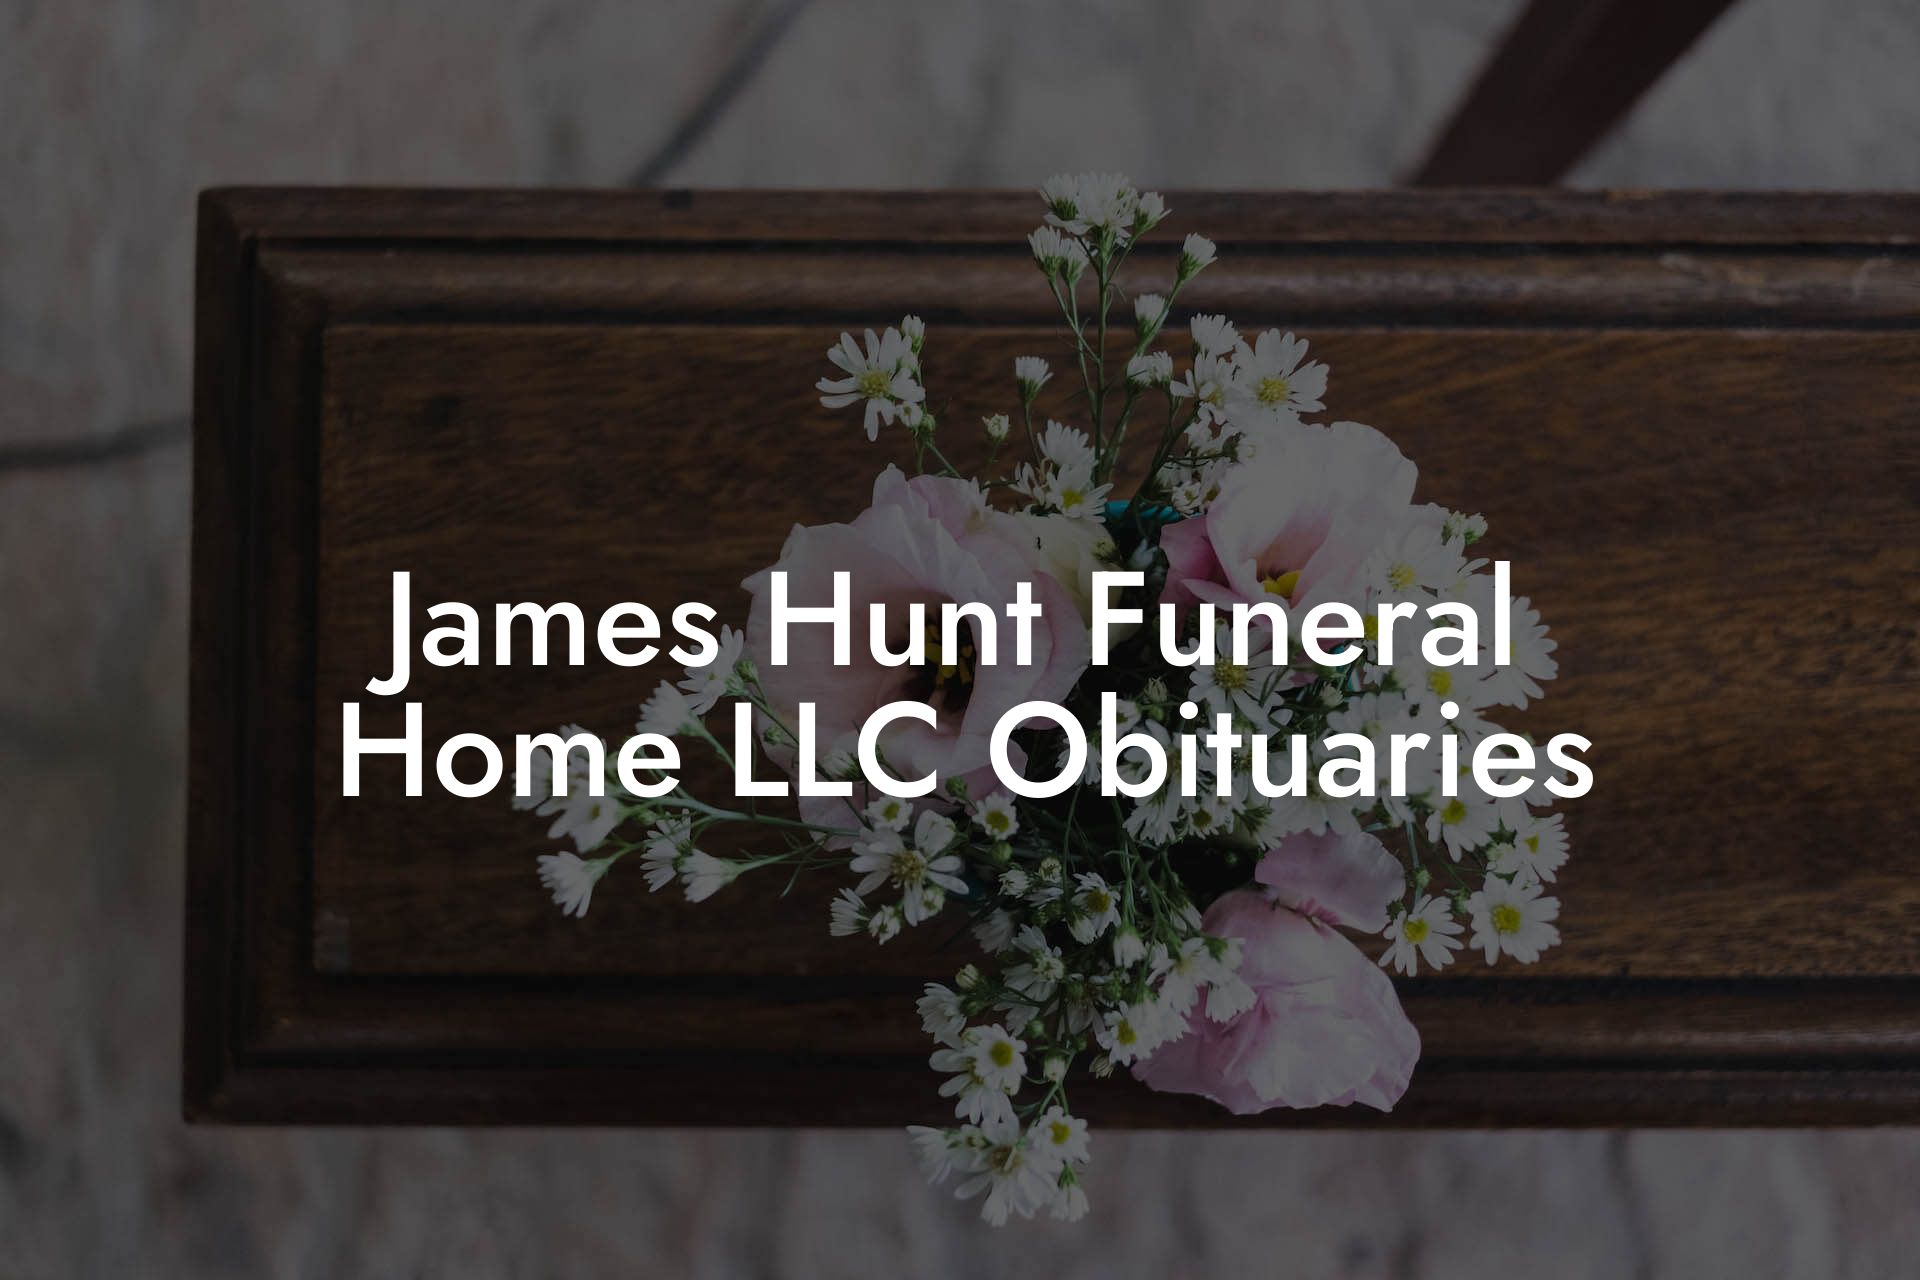 James Hunt Funeral Home LLC Obituaries